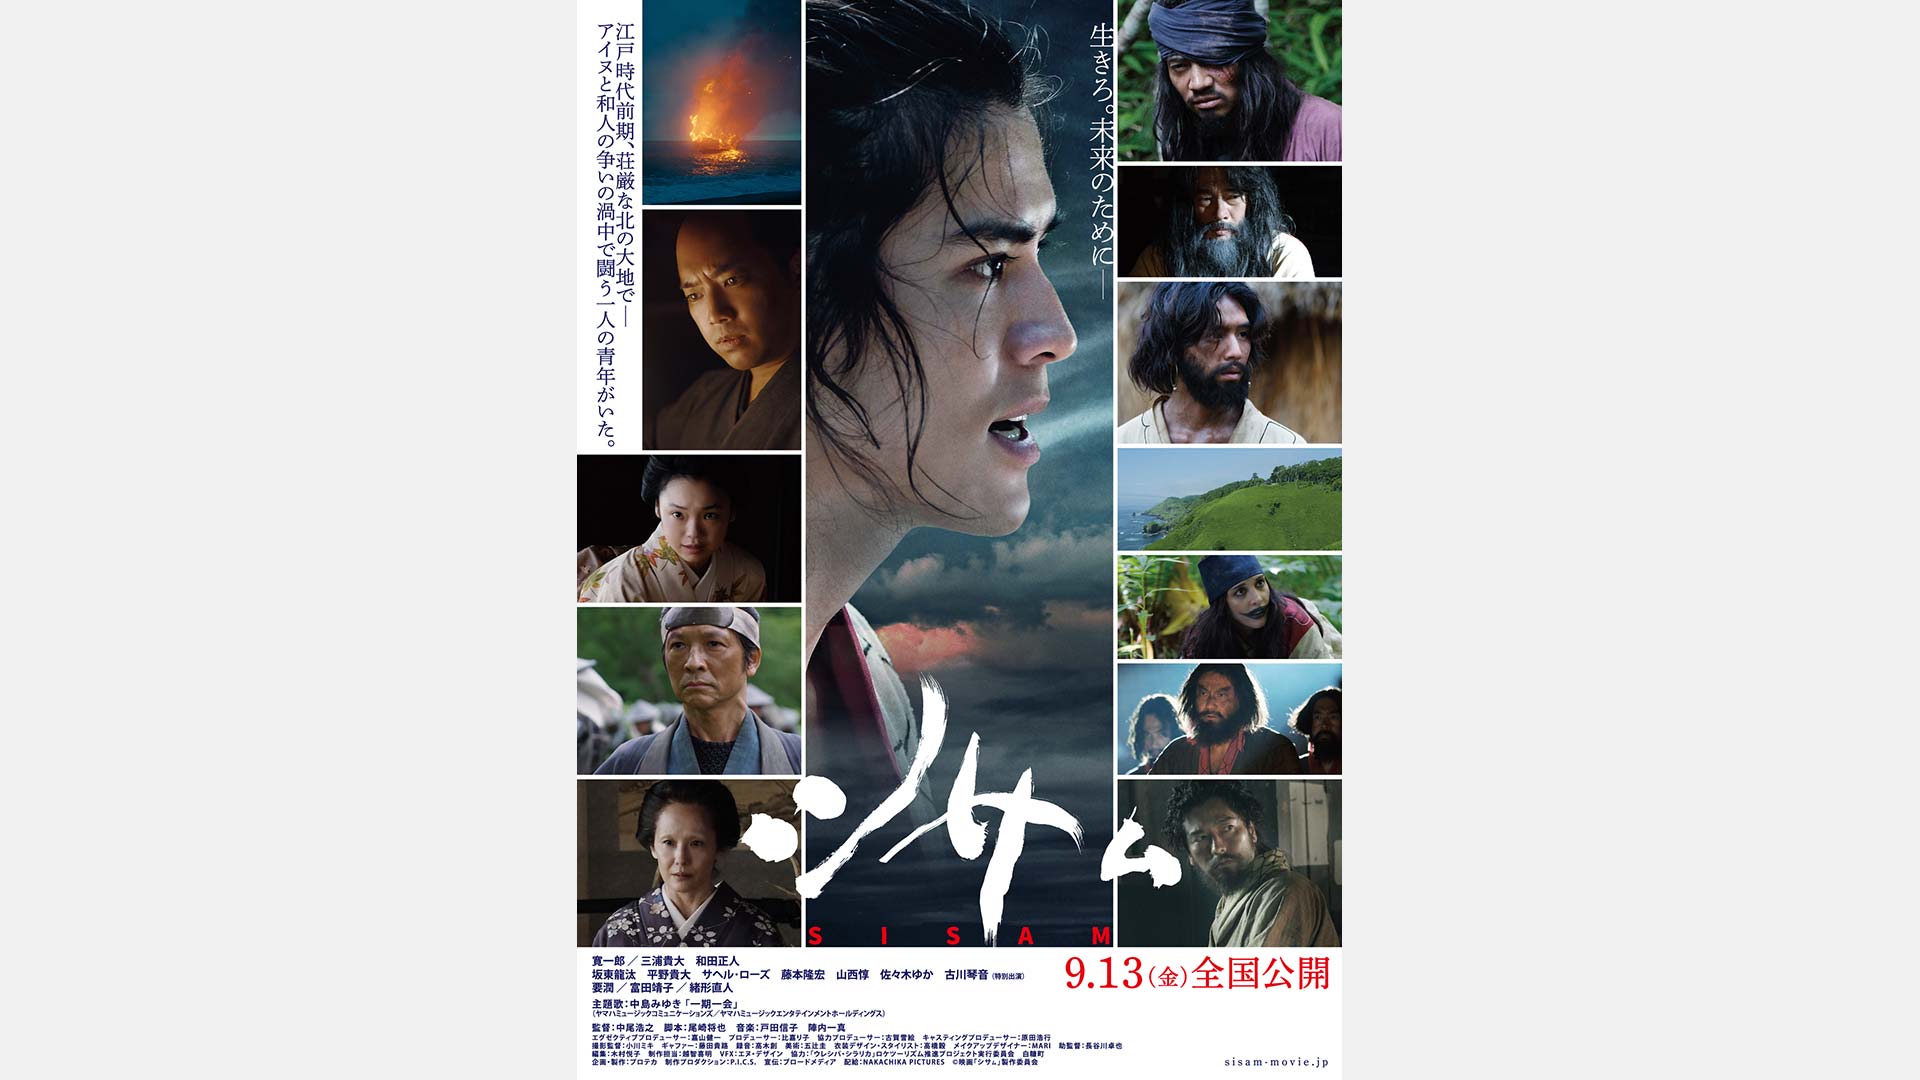 中尾浩之監督作 / アイヌと和人との歴史を描いた歴史スペクタクル映画「シサㇺ」9月13日(金)全国公開。